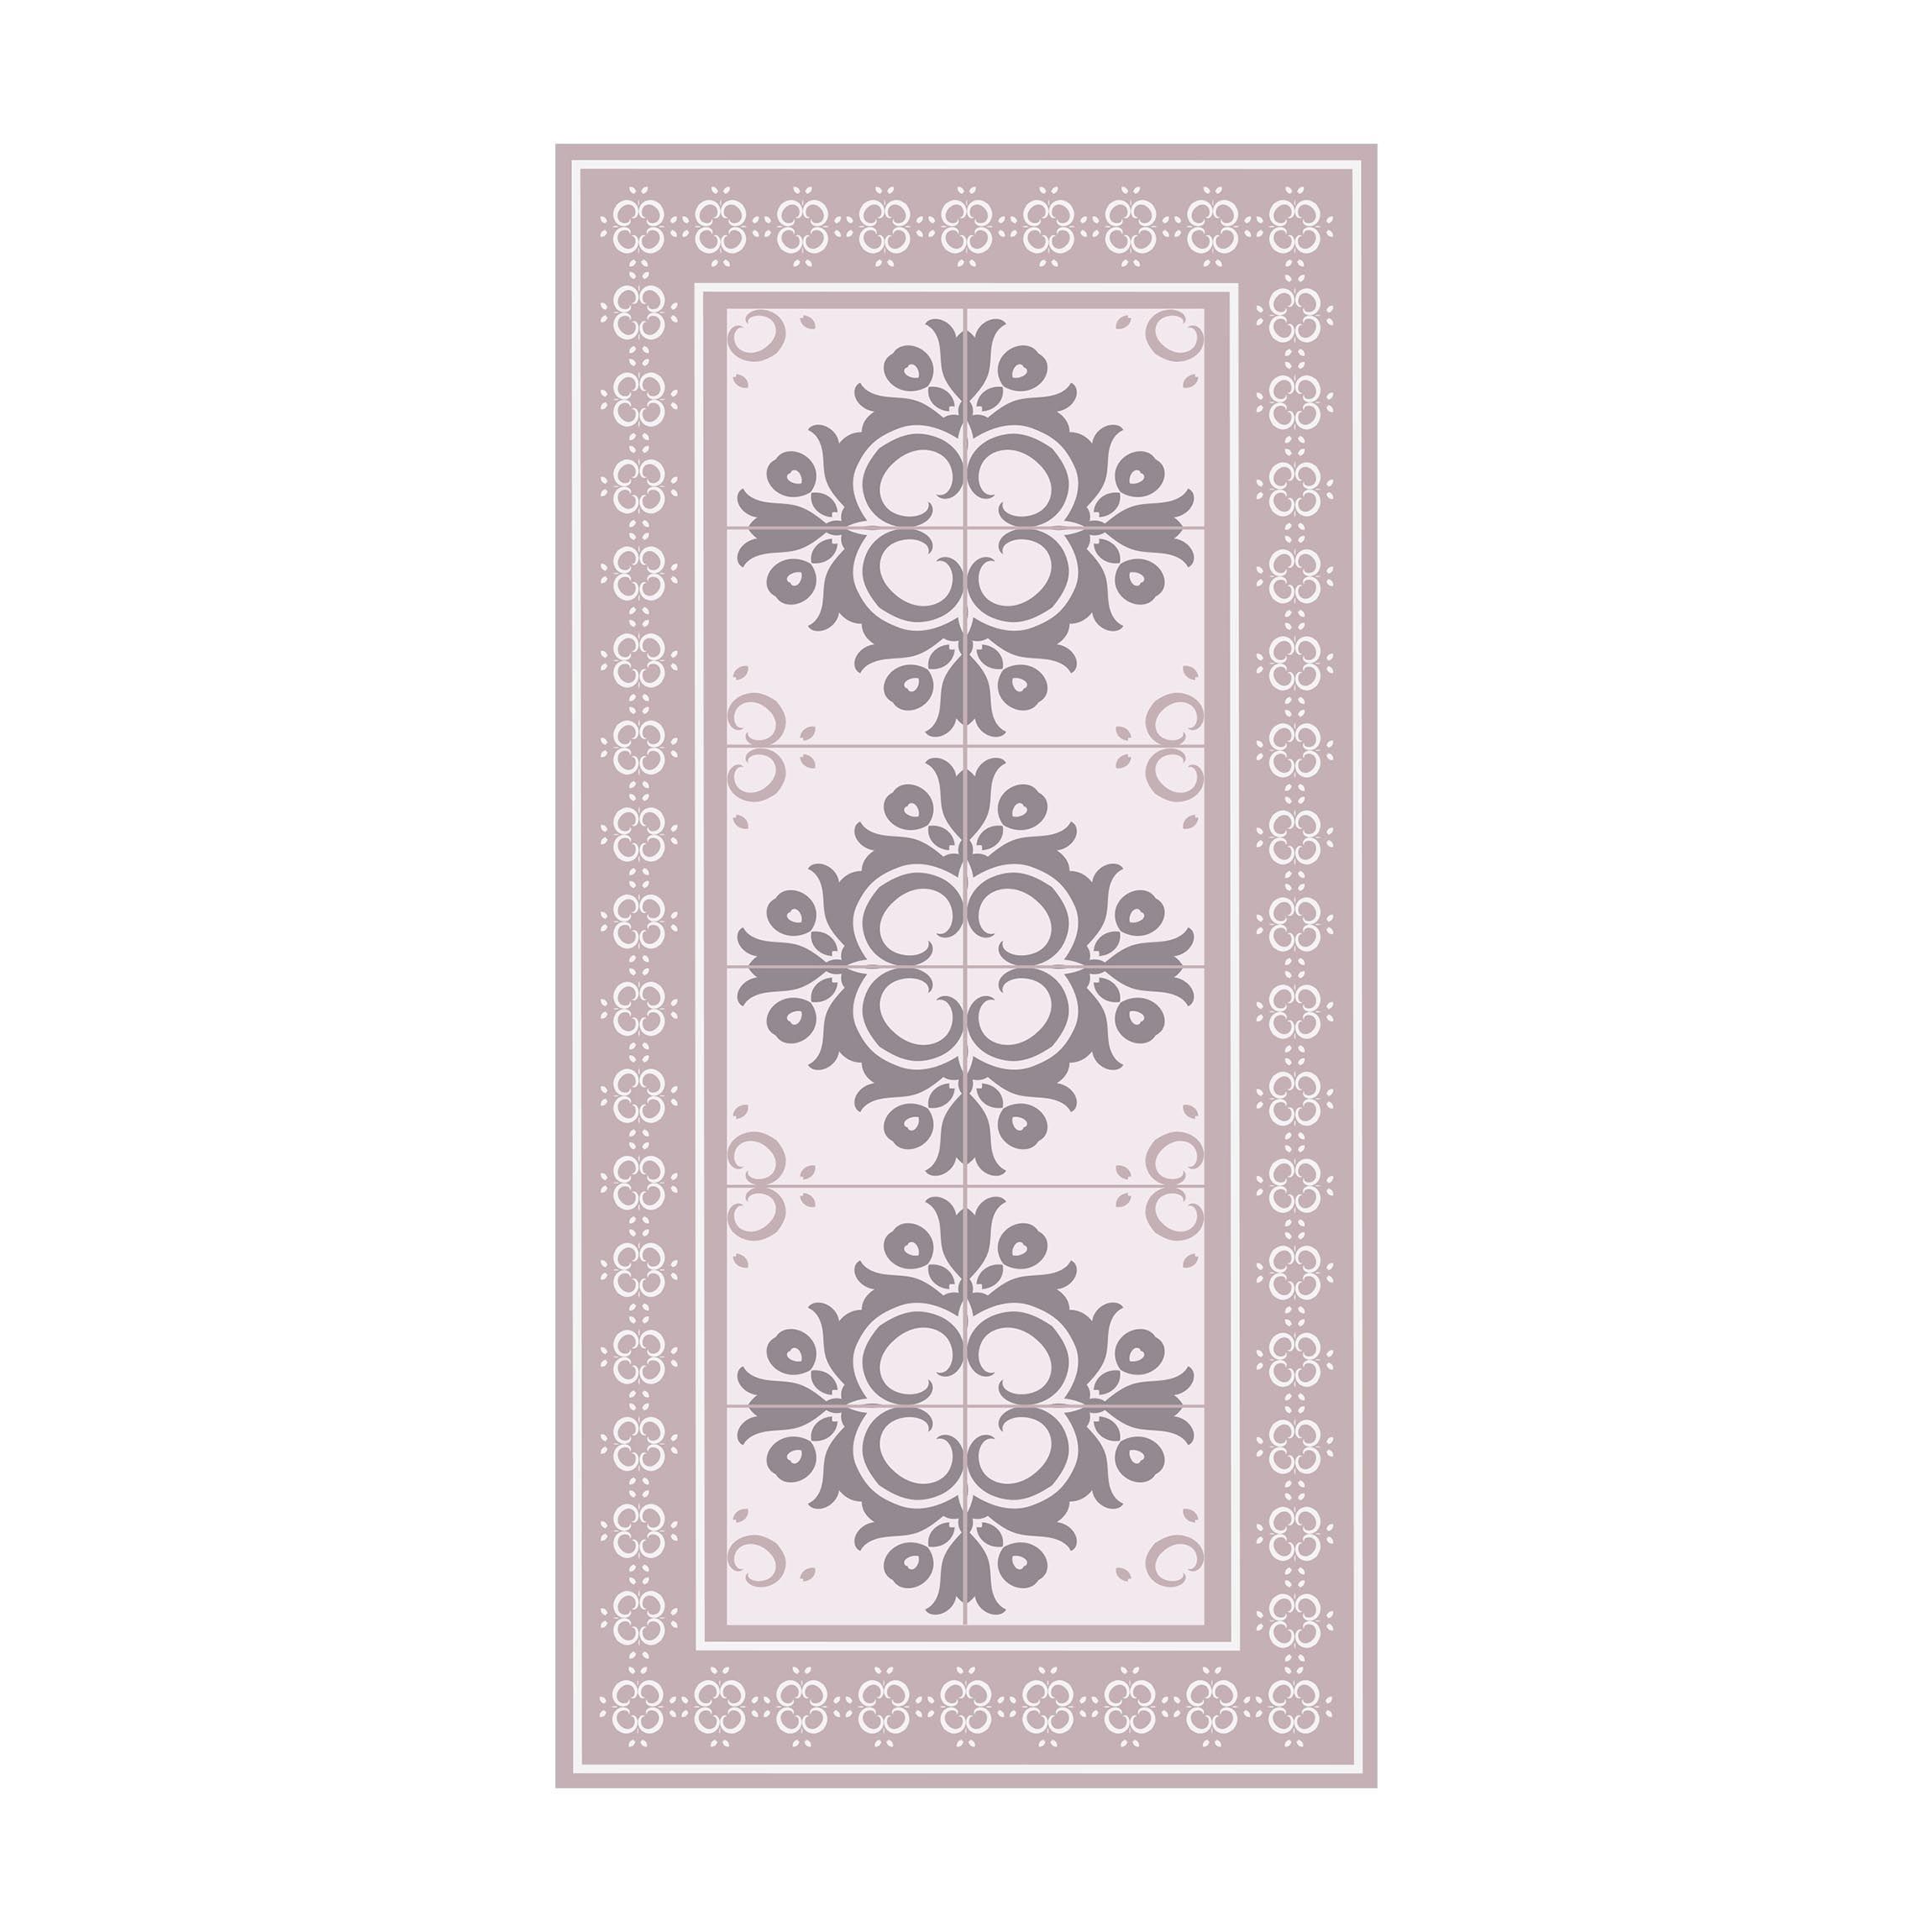 Tappeti in vinile - Piastrelle floreali con gemme grigie con bordo -  Verticale 3:2 Dimensione HxL: 60cm